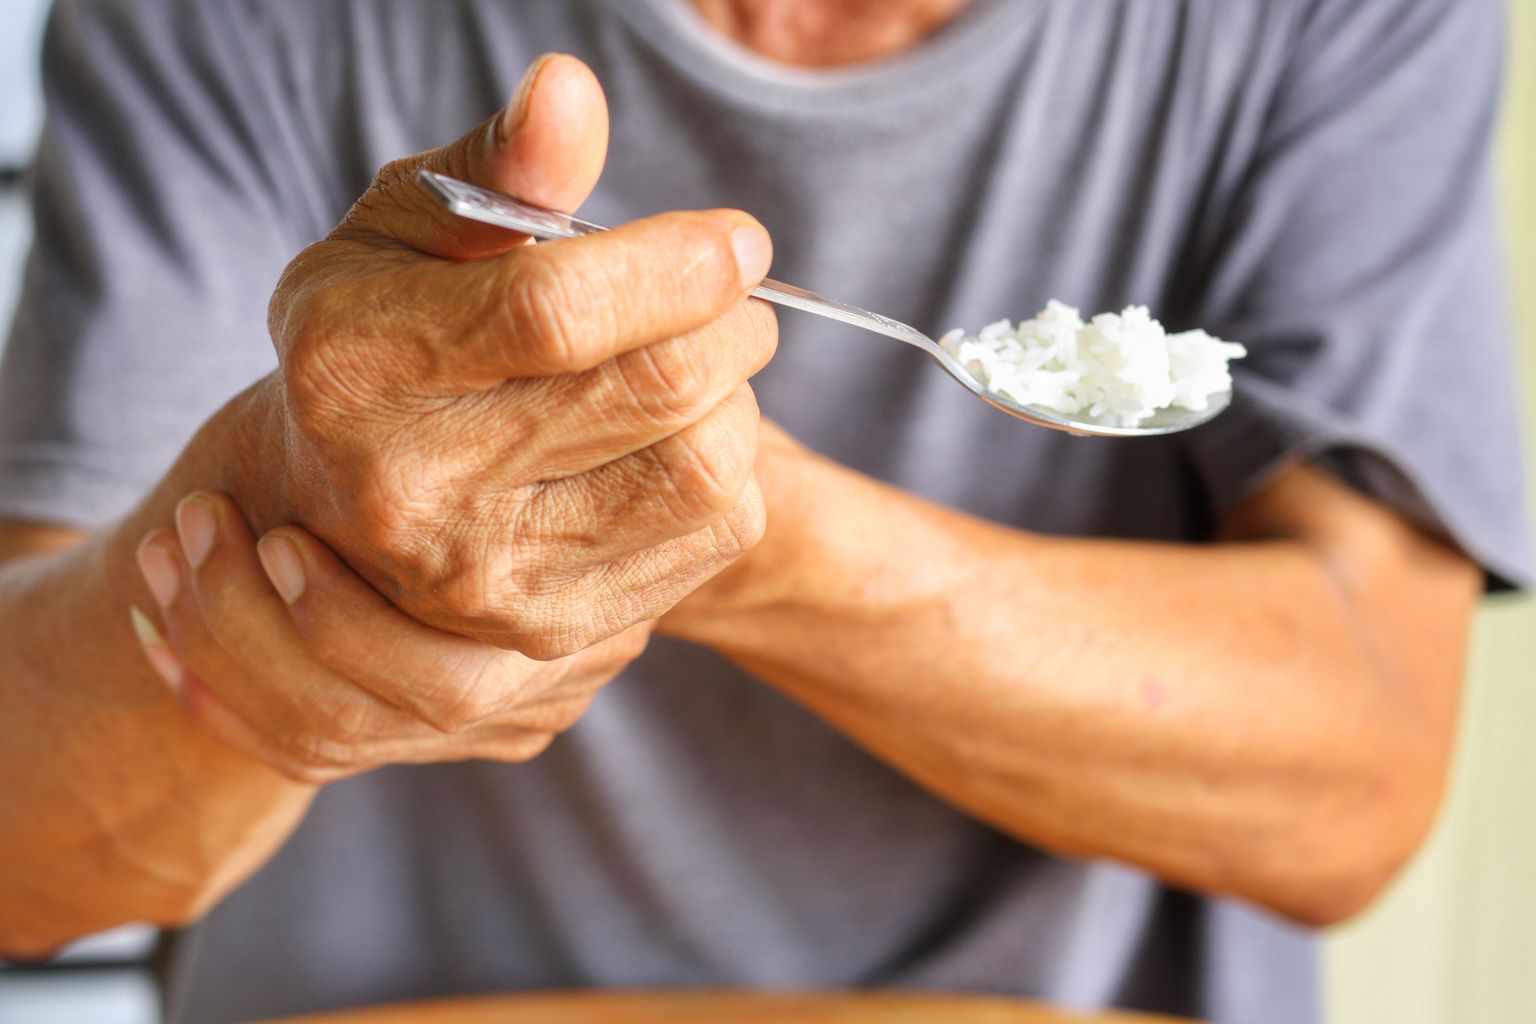 Una persona mayor se coge de la mano mientras come.